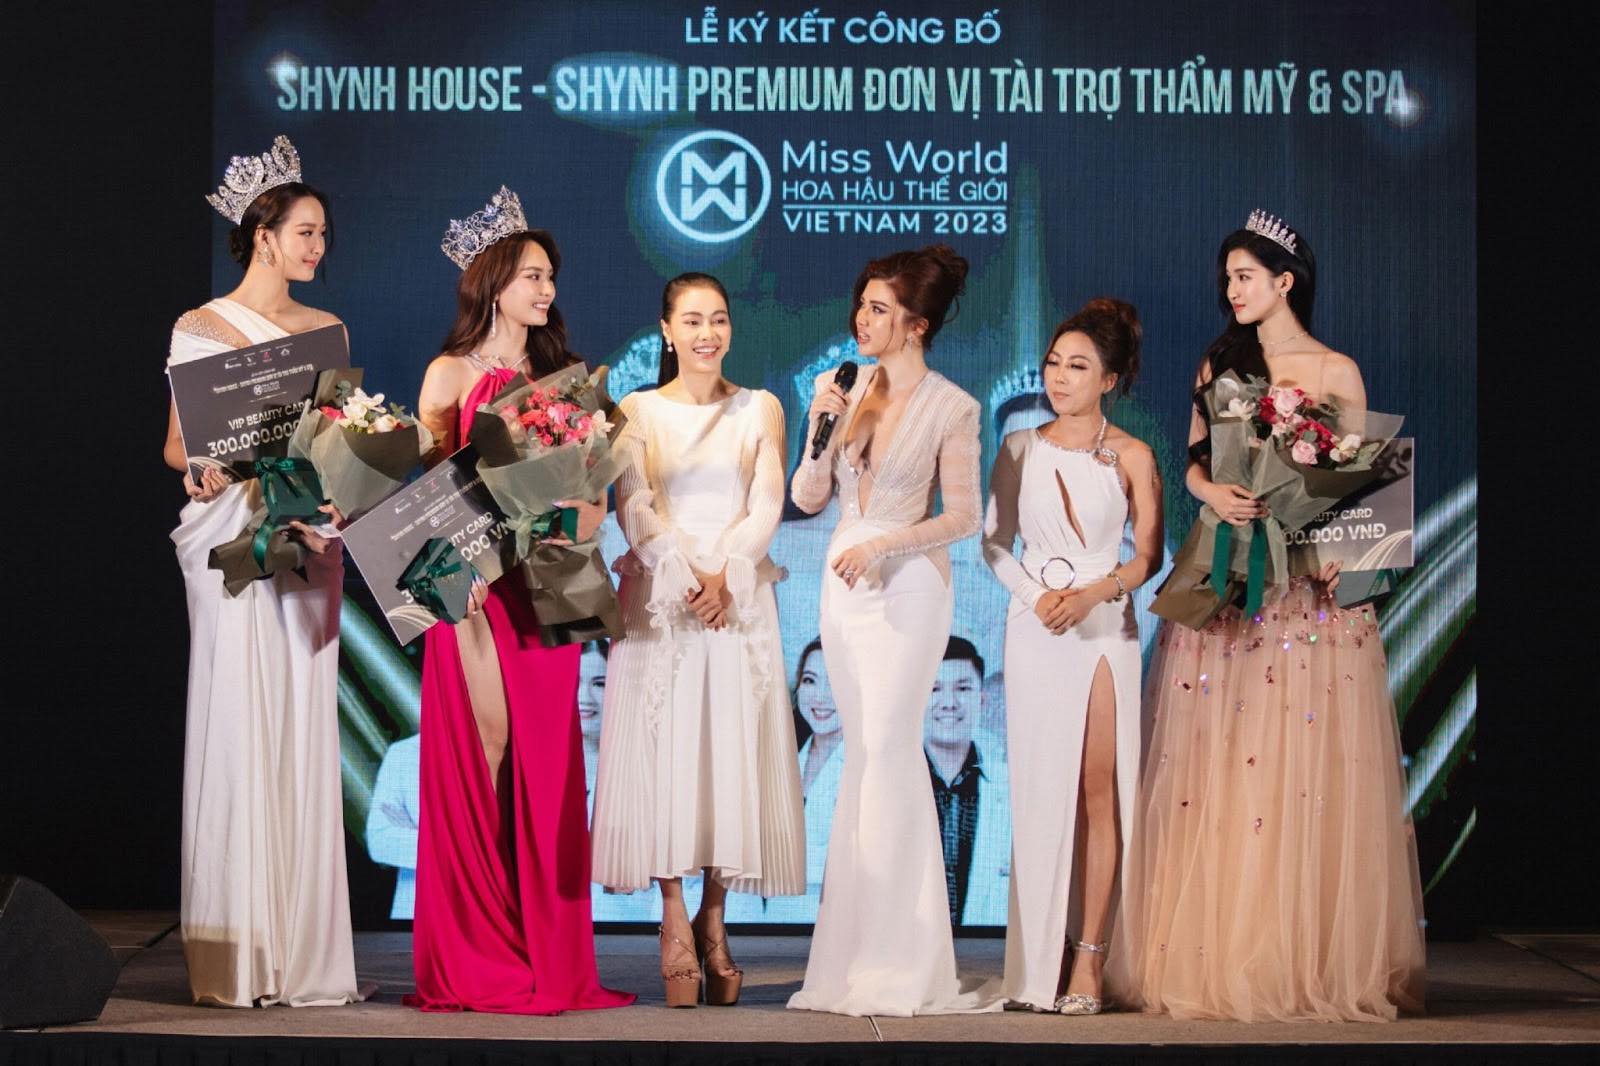 Shynh House – Shynh Premium 